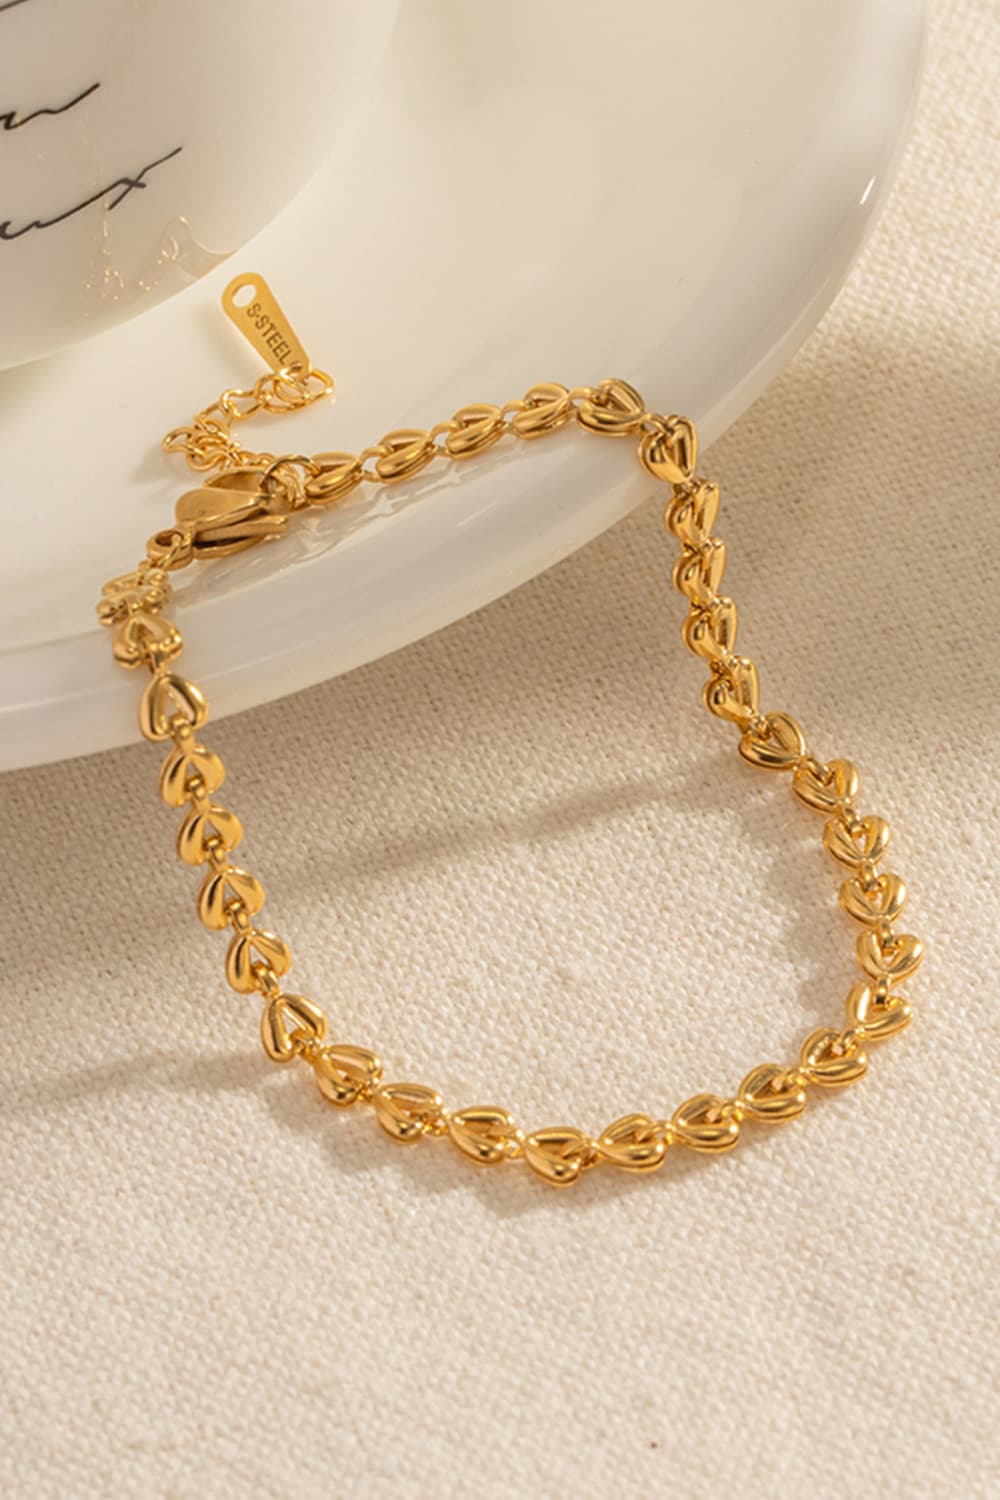 Heart Chain Lobster Clasp Bracelet - Gold / One Size - Women’s Jewelry - Bracelets - 4 - 2024